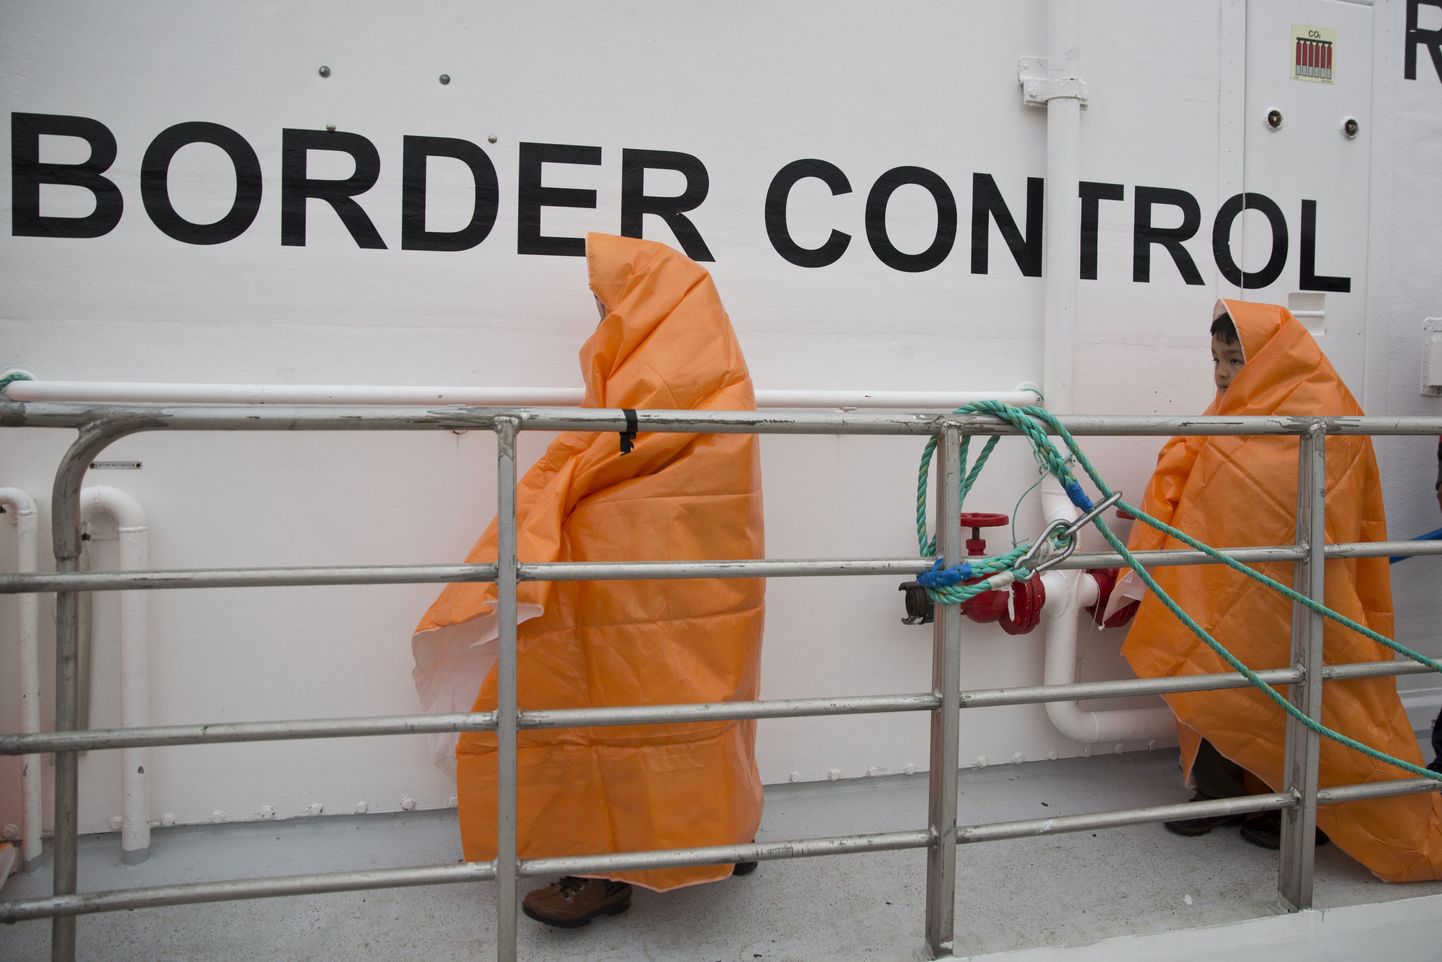 Lapspagulased Frotexi patrullalusel pärast nende päästmist Kreekale kuuluva Lesbose saare rannikuvetest.